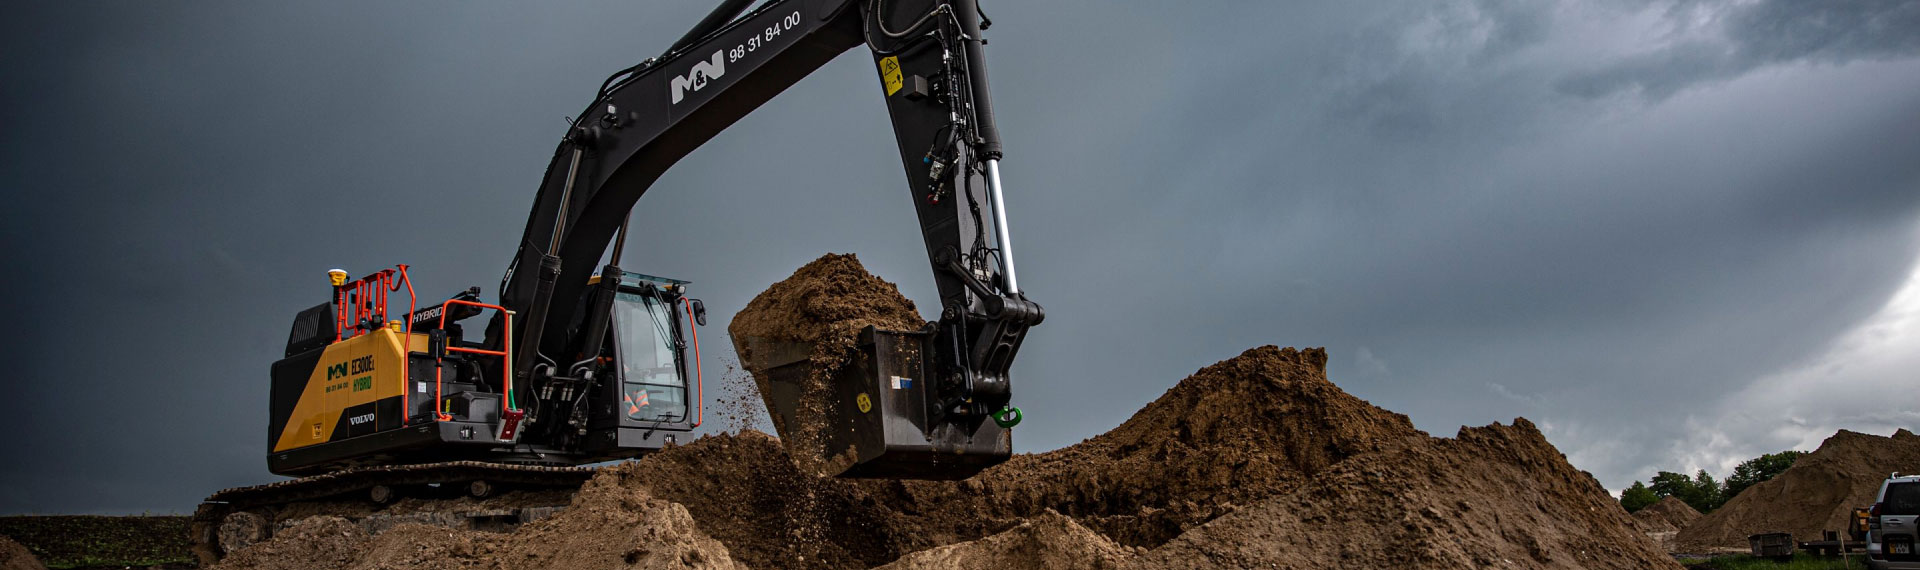 由Hardox® 500 Tuf钢制成的坚固而轻便的挖掘机铲斗，可以挖掘泥土。